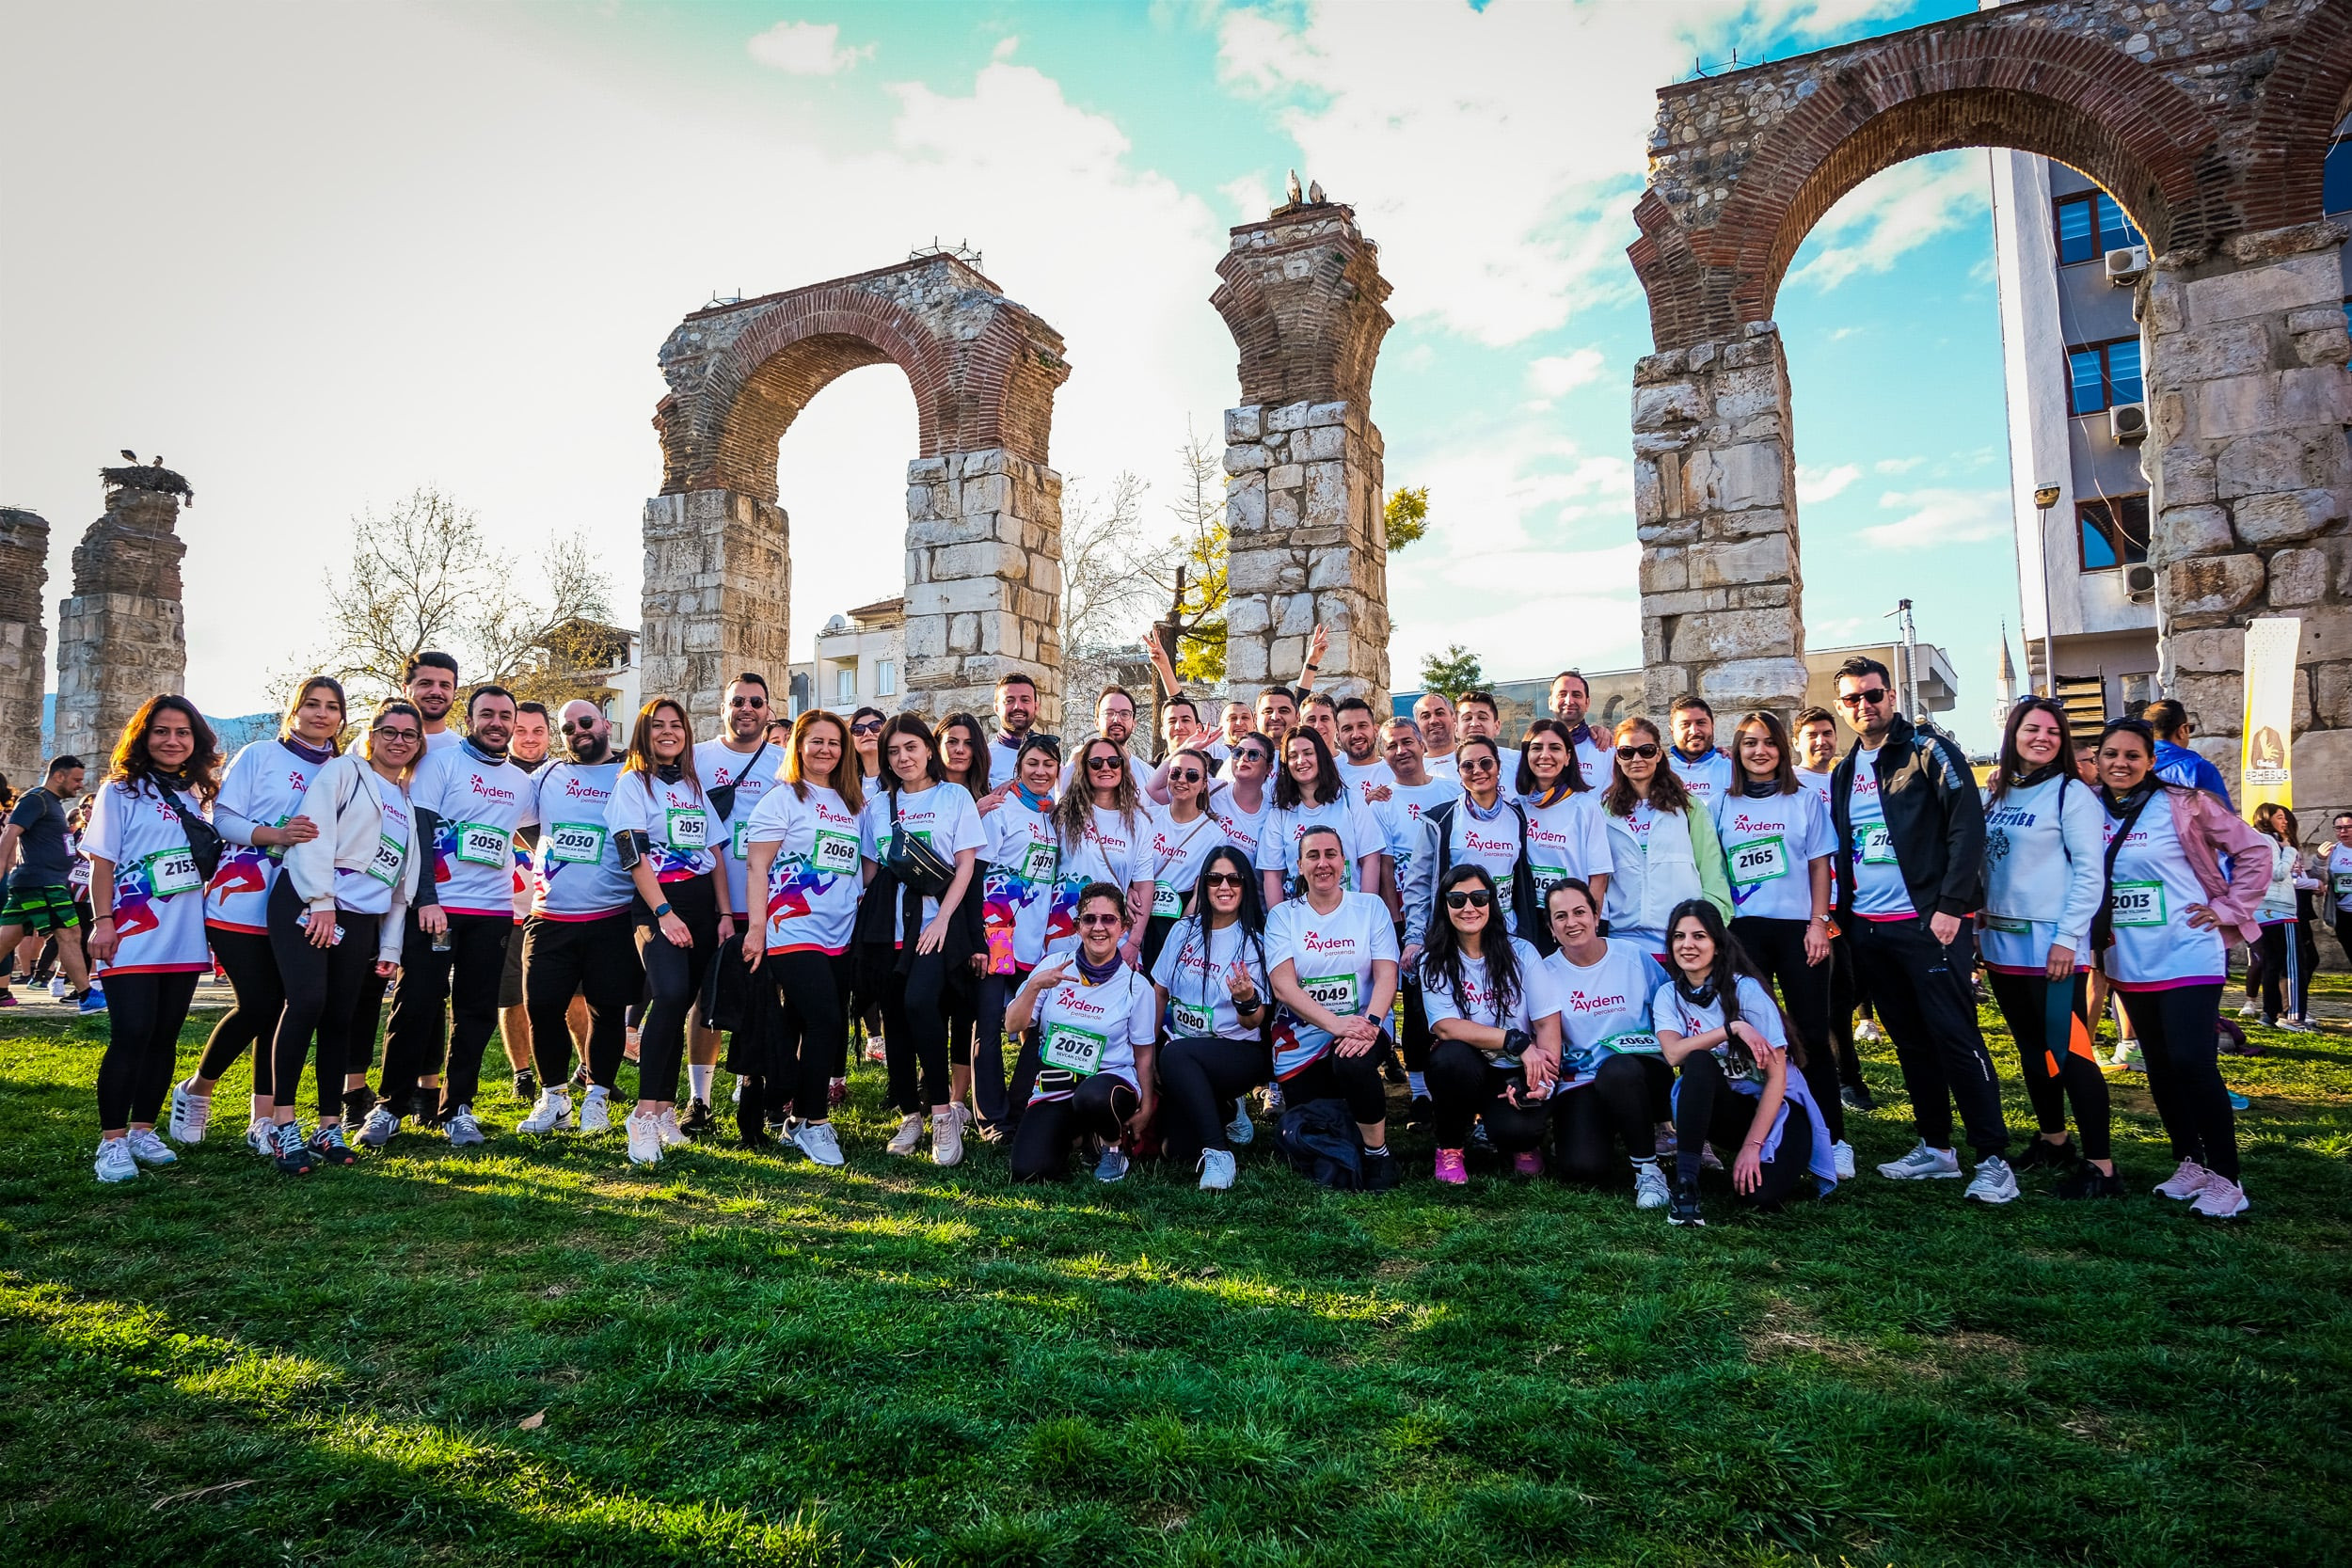  We were at Ephesus Ultra Marathon for Support! 